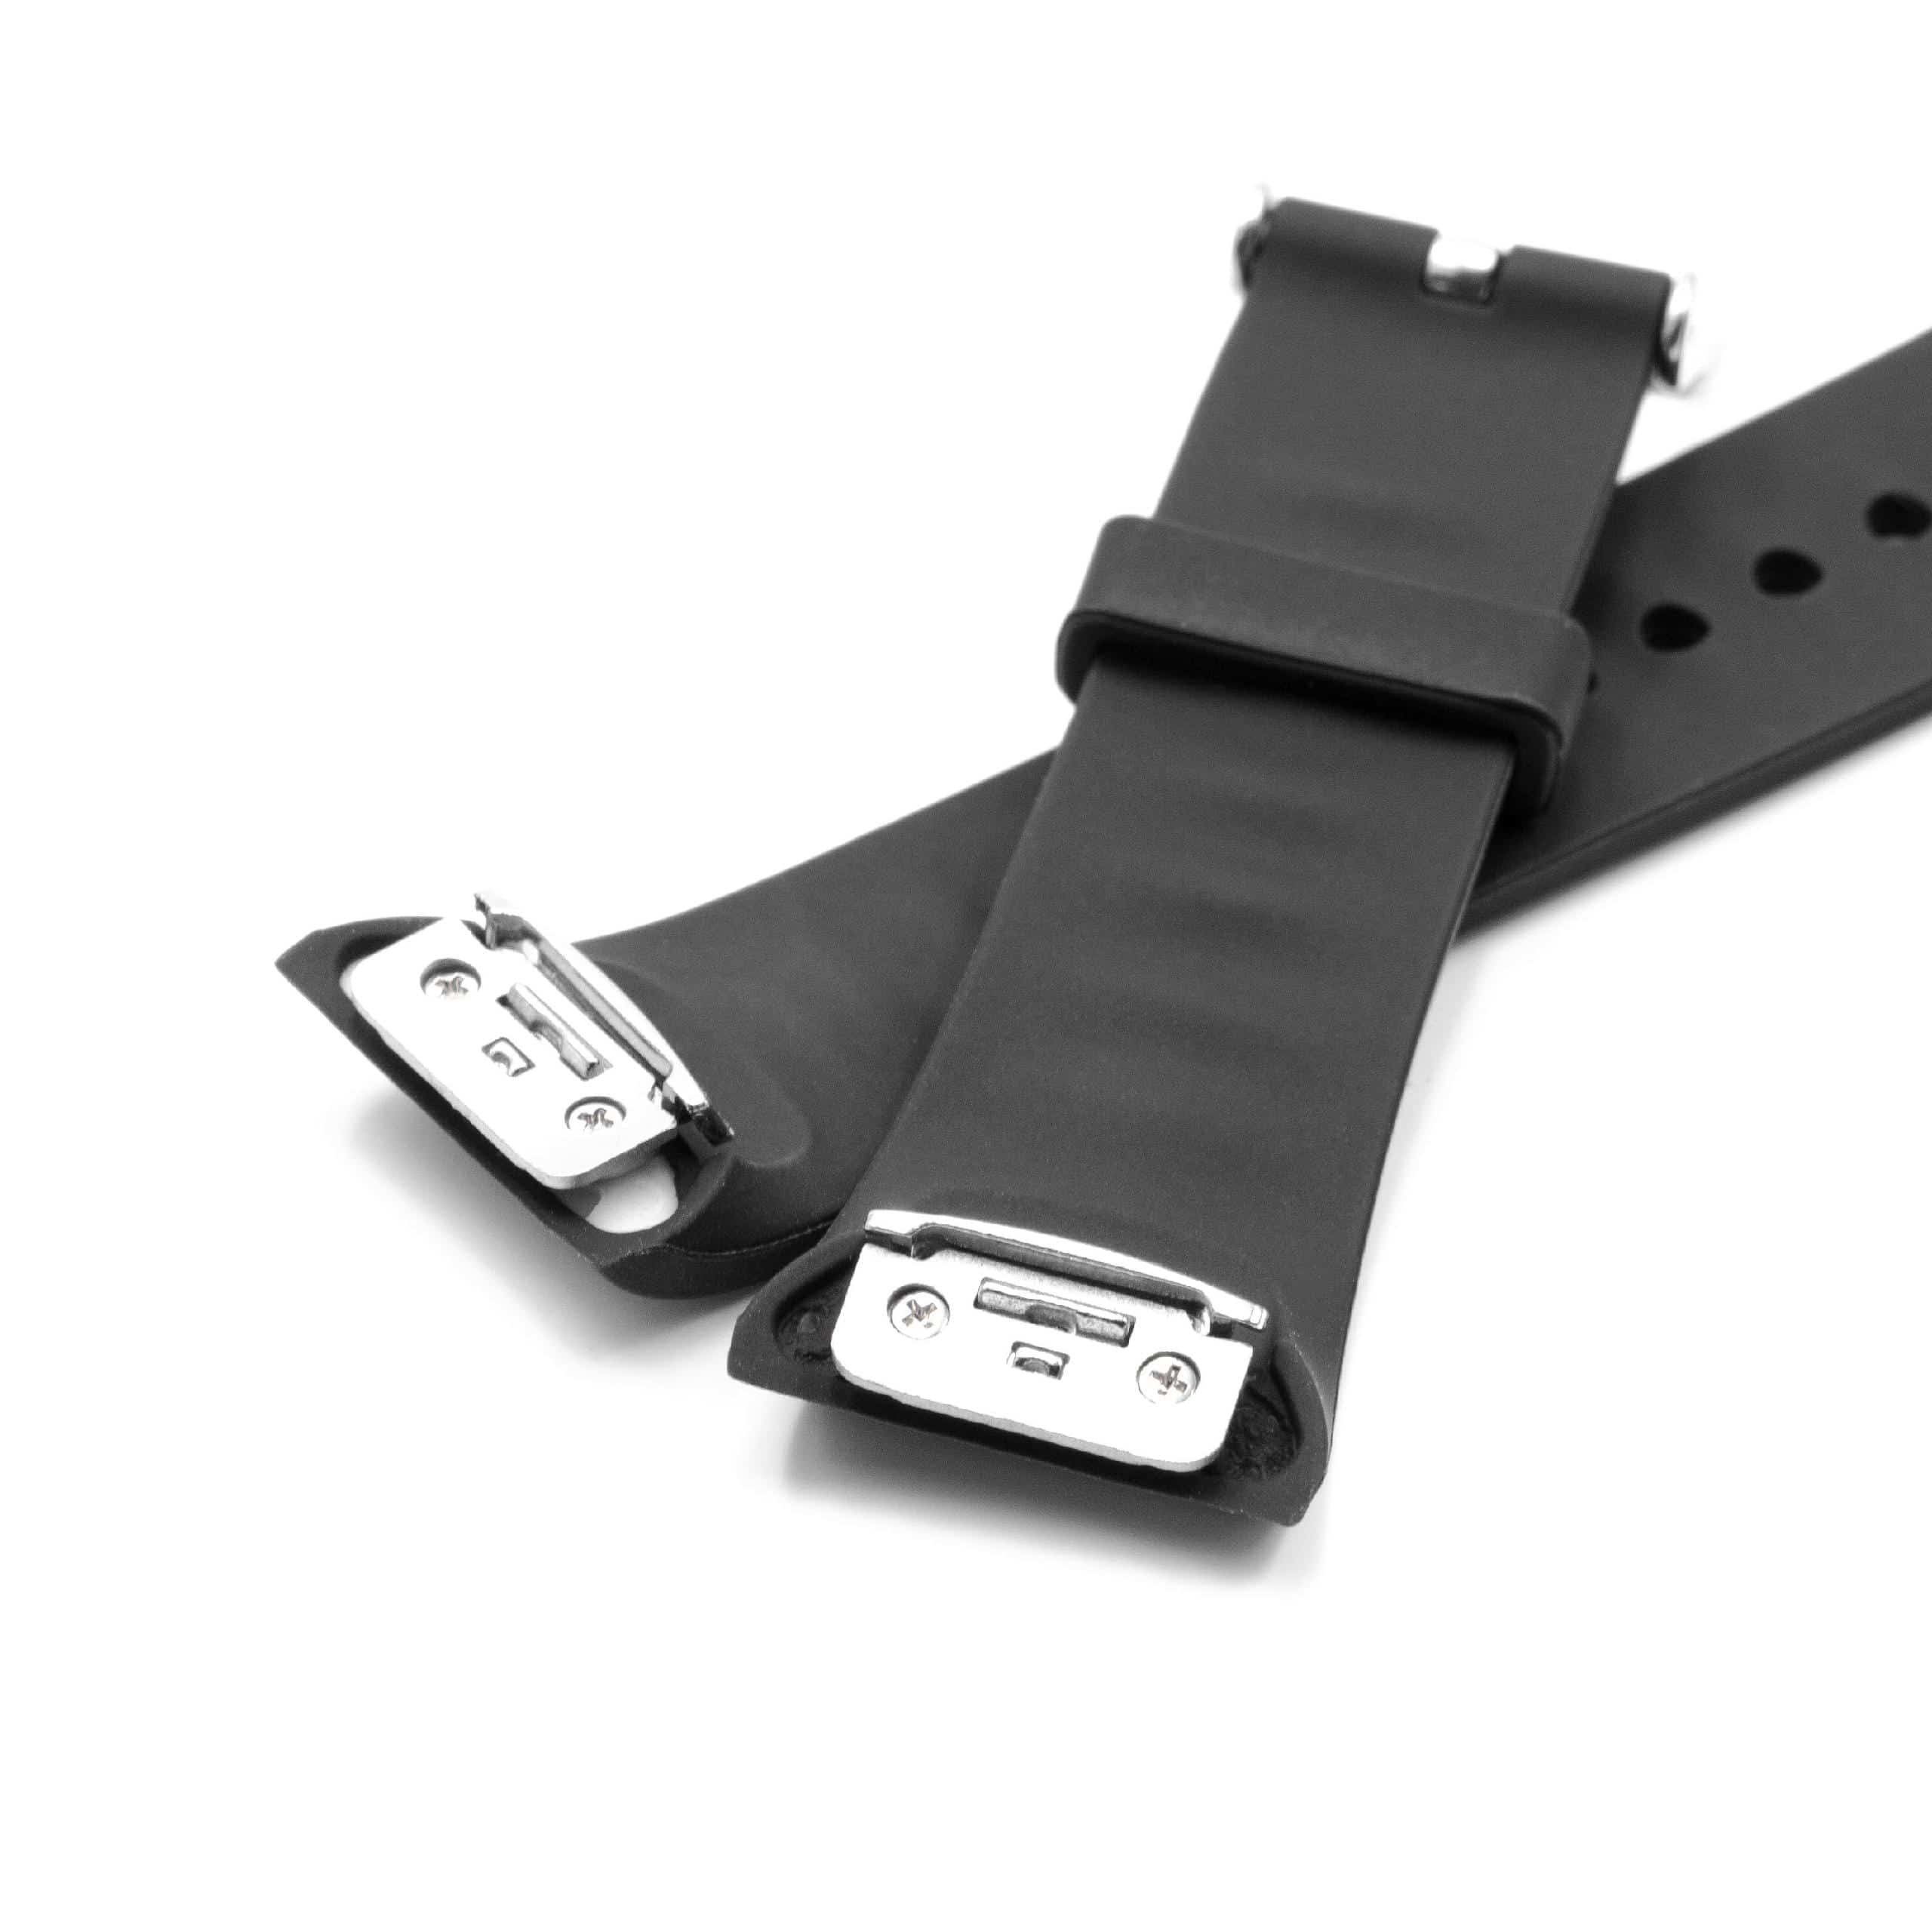 Armband für Samsung Gear Smartwatch - 11,7 + 7,6 cm lang, 18,5mm breit, Silikon, schwarz